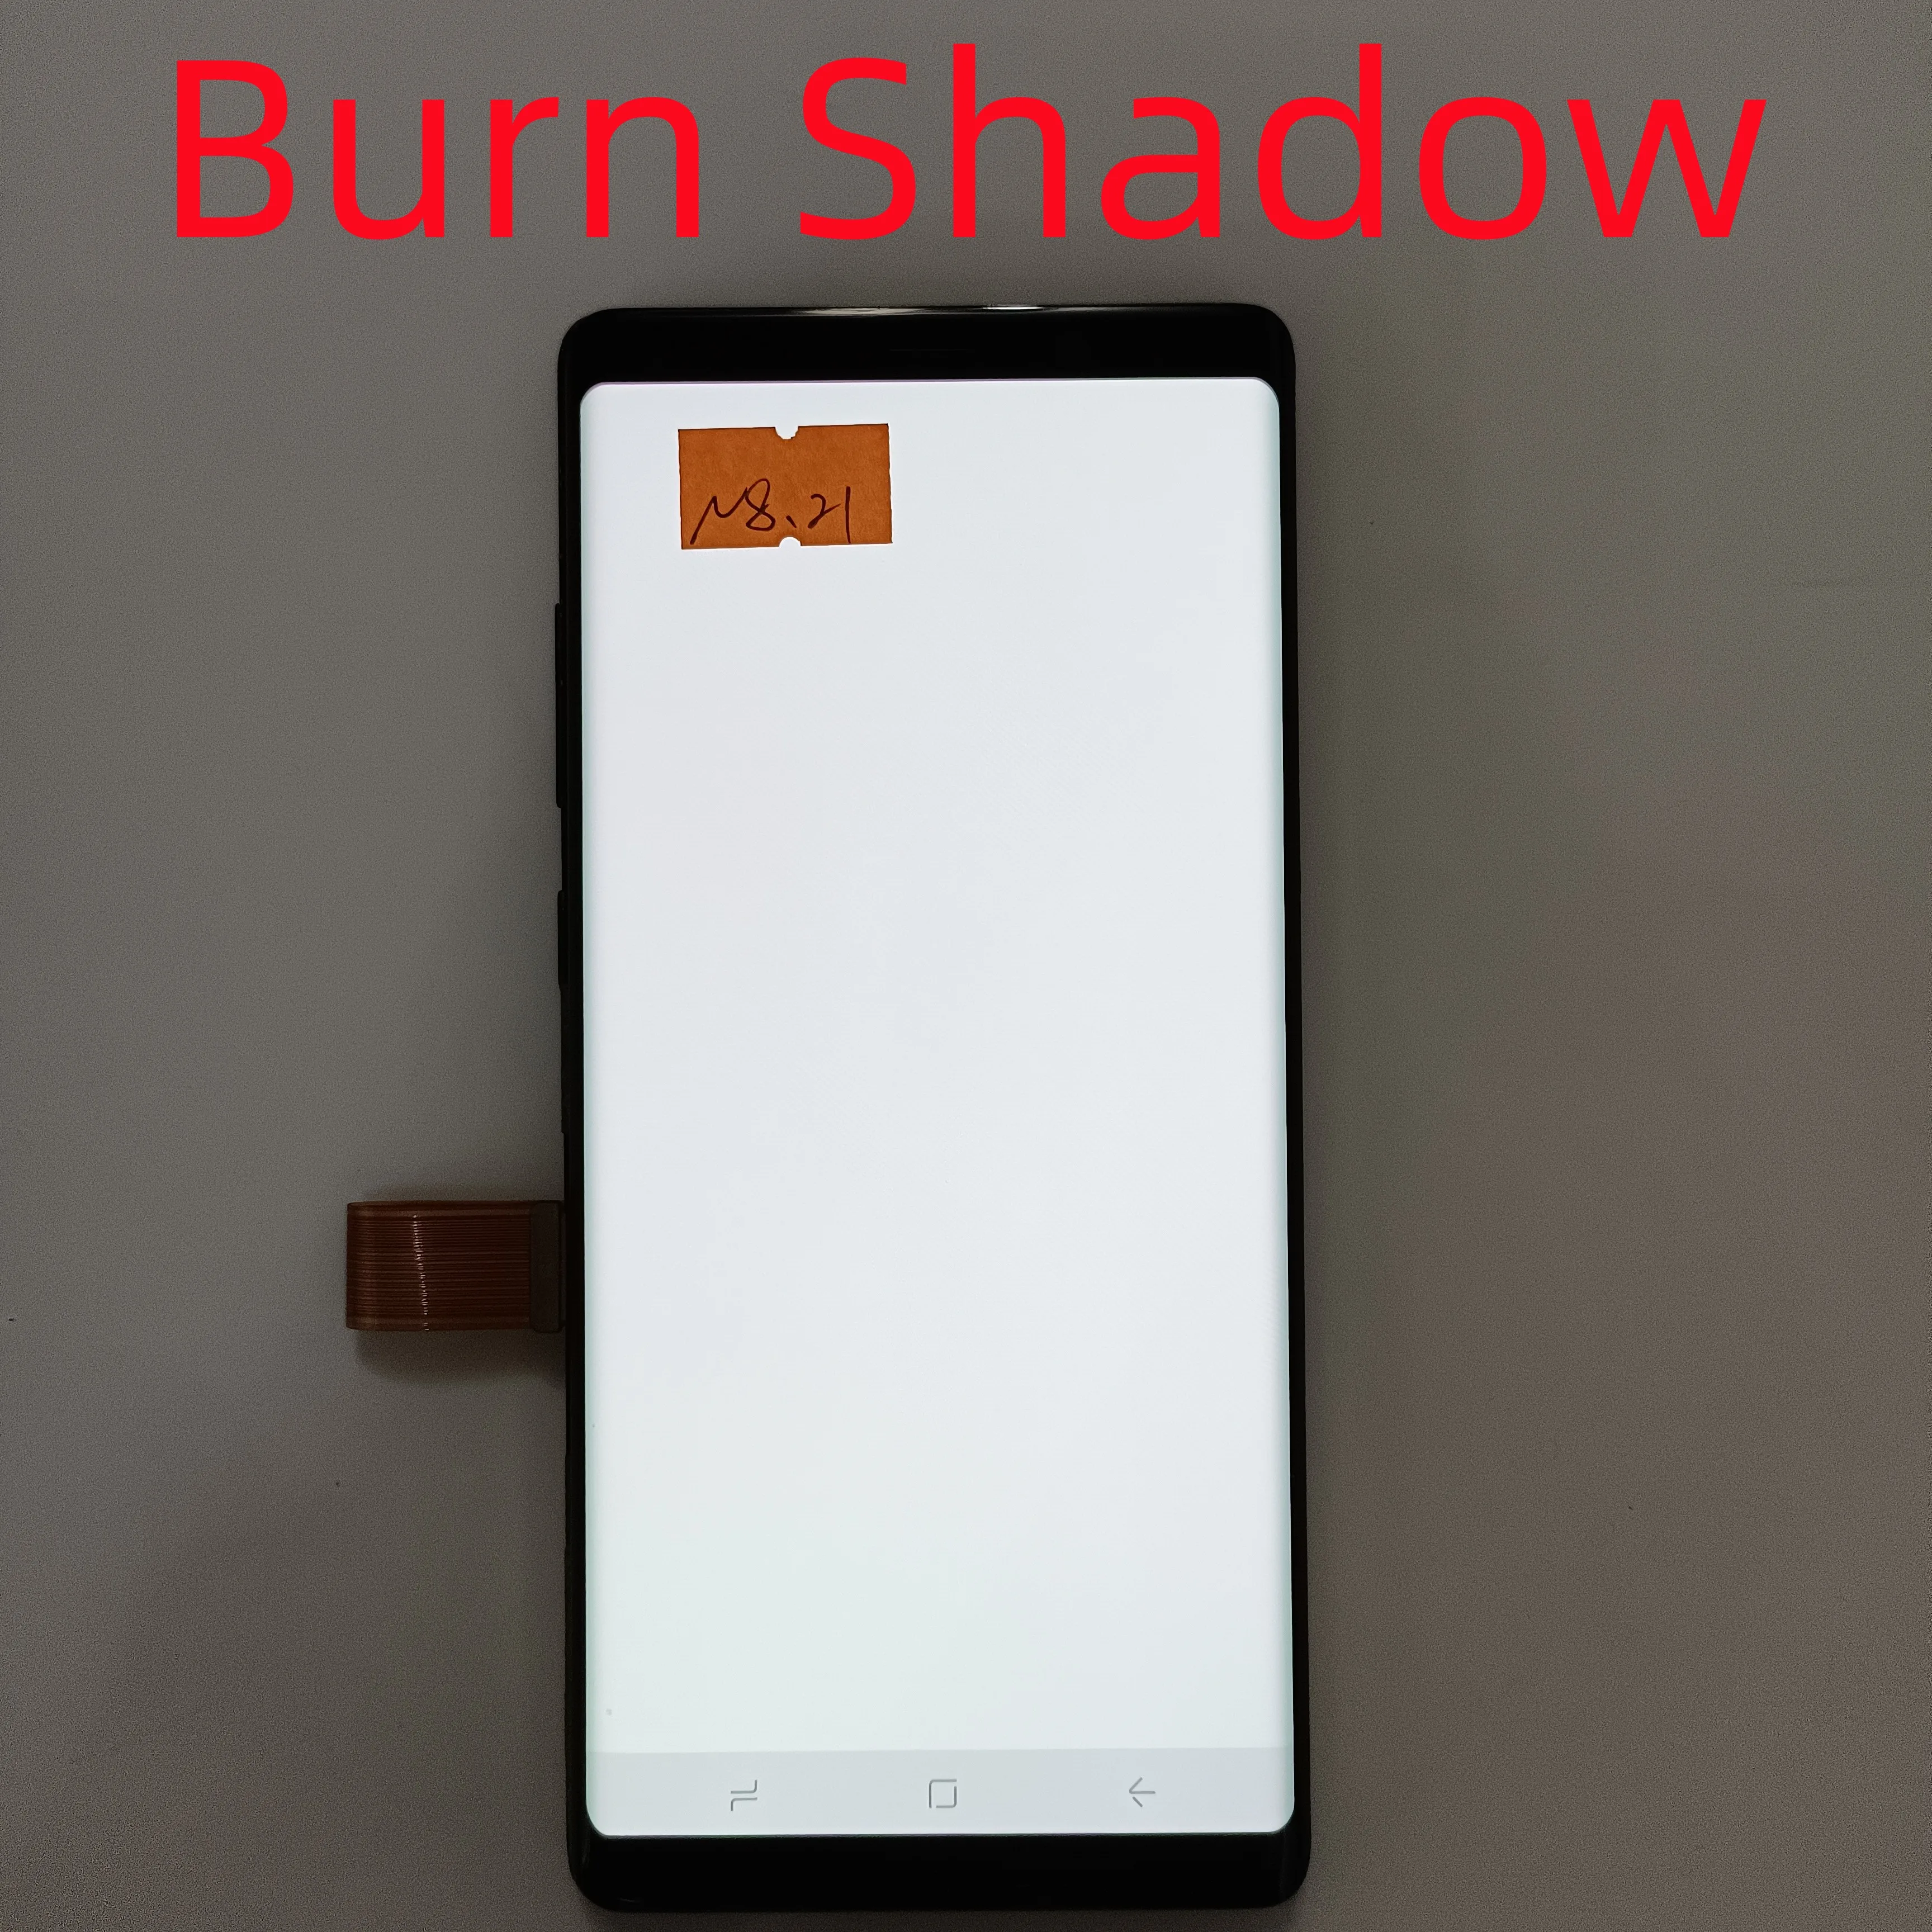 

Original For Samsung Galaxy Note8 N950F Display Super AMOLED SM-N950A N950U Touch Screen Digitizer Component, With burn shadow